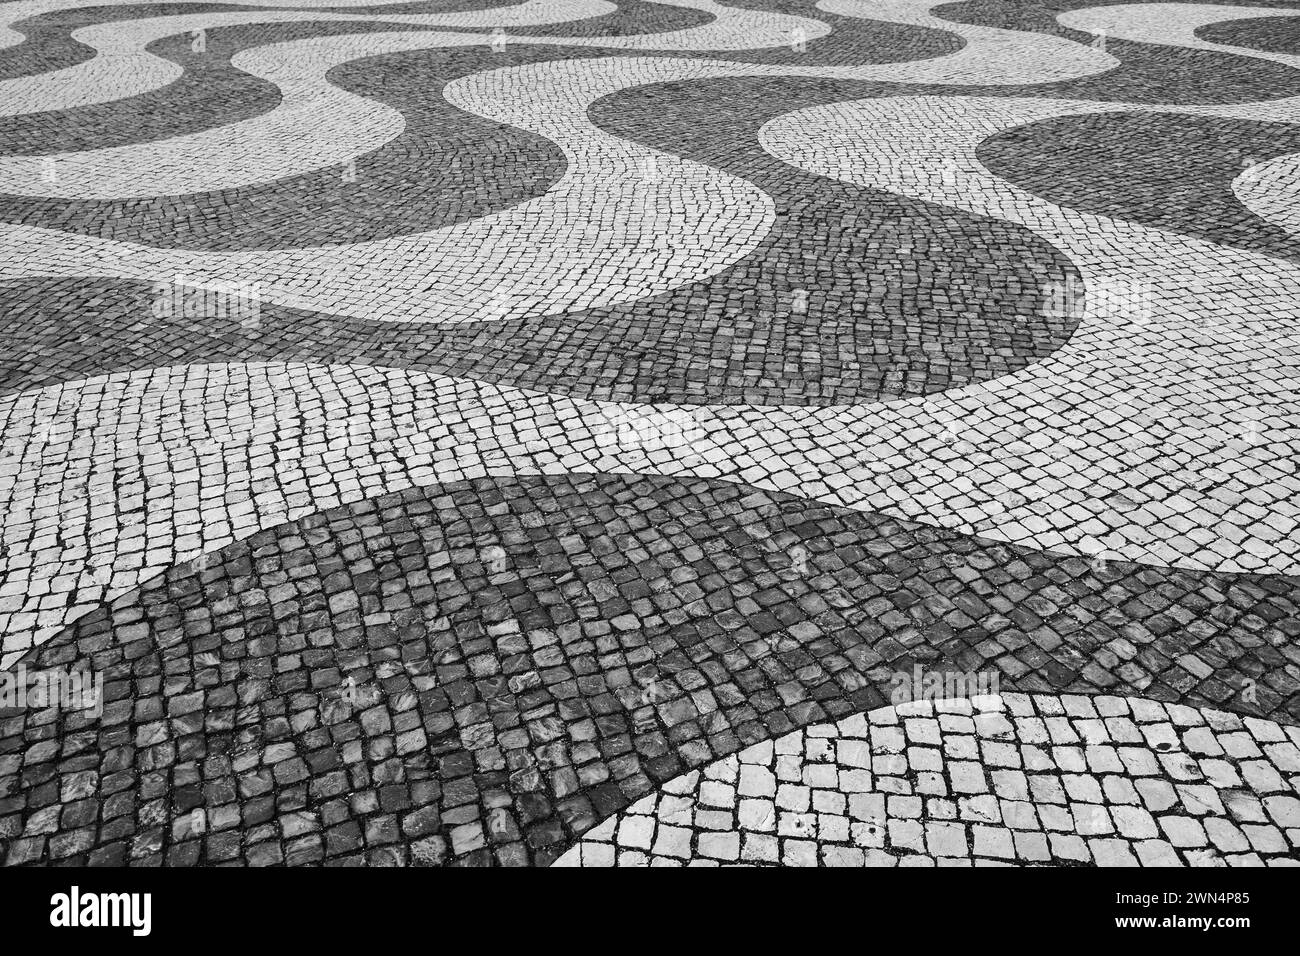 Typisch portugiesisches Mosaik-Pflastersteinpflaster in Lissabon, Portugal, schwarz-weiß. Stockfoto